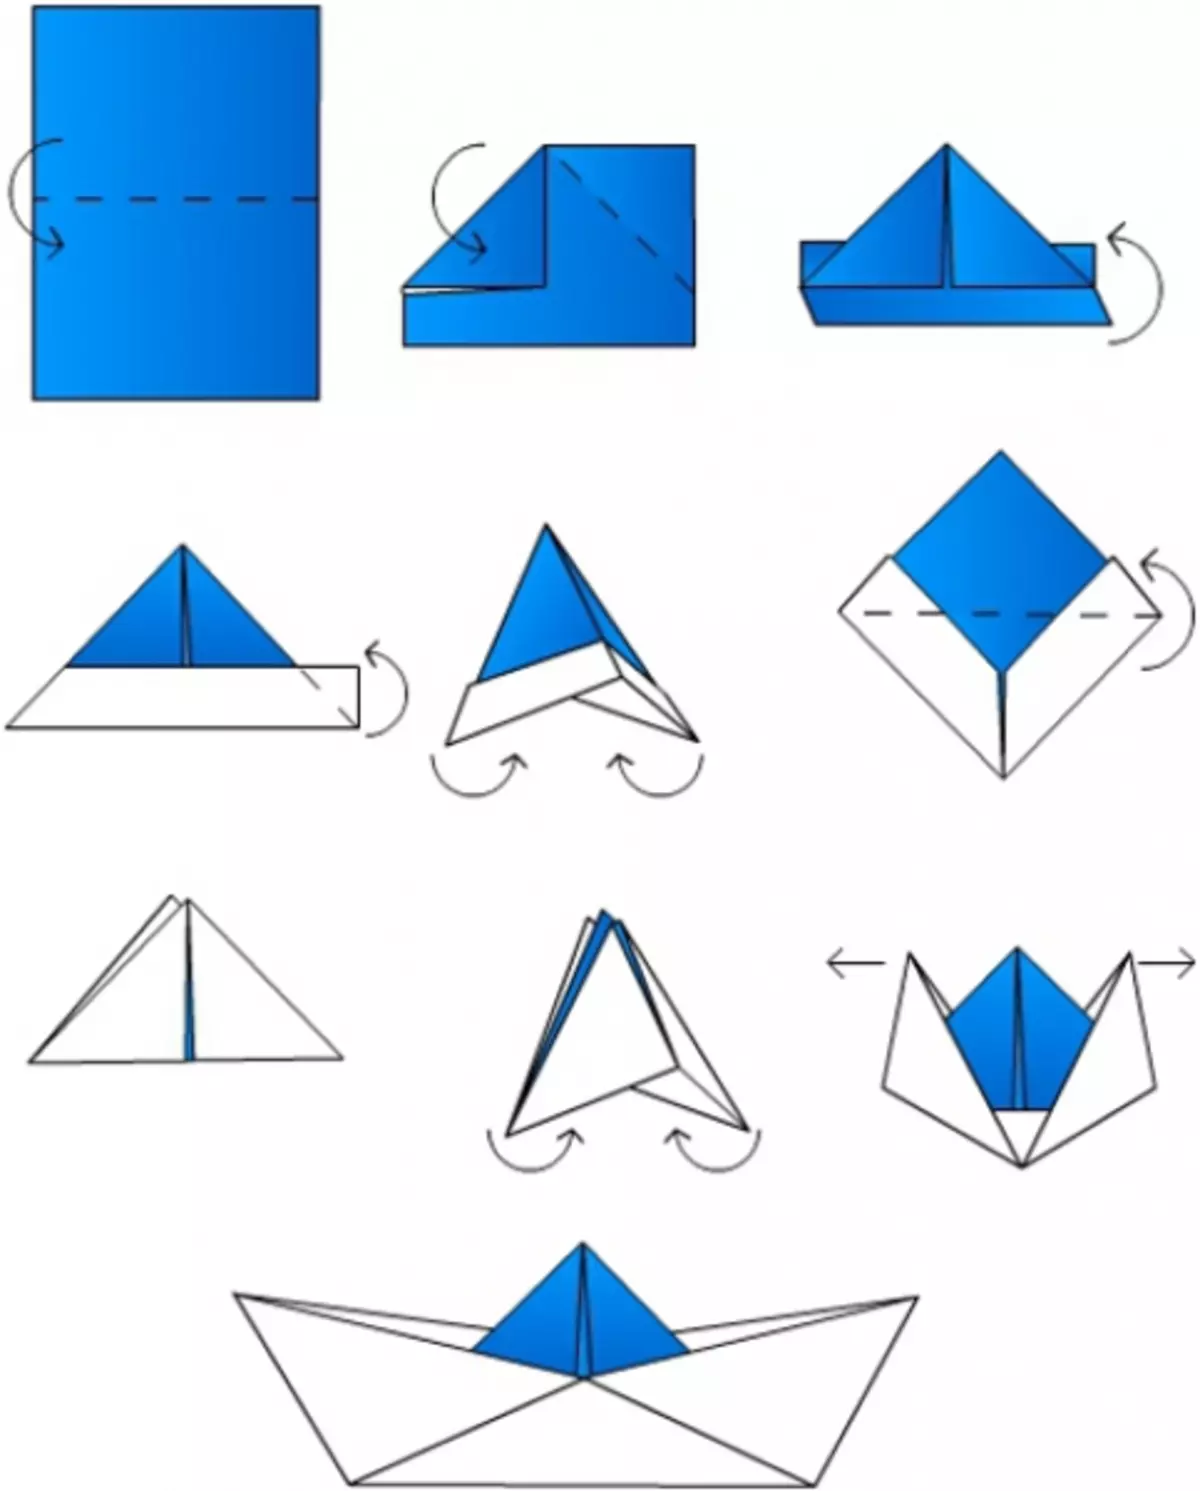 Как сделать кораблик из бумаги фото. Схема как сделать кораблик из бумаги. Кораблик оригами из бумаги для детей схема простая. Бумажный кораблик схема складывания. Как делать кораблик из бумаги а4.